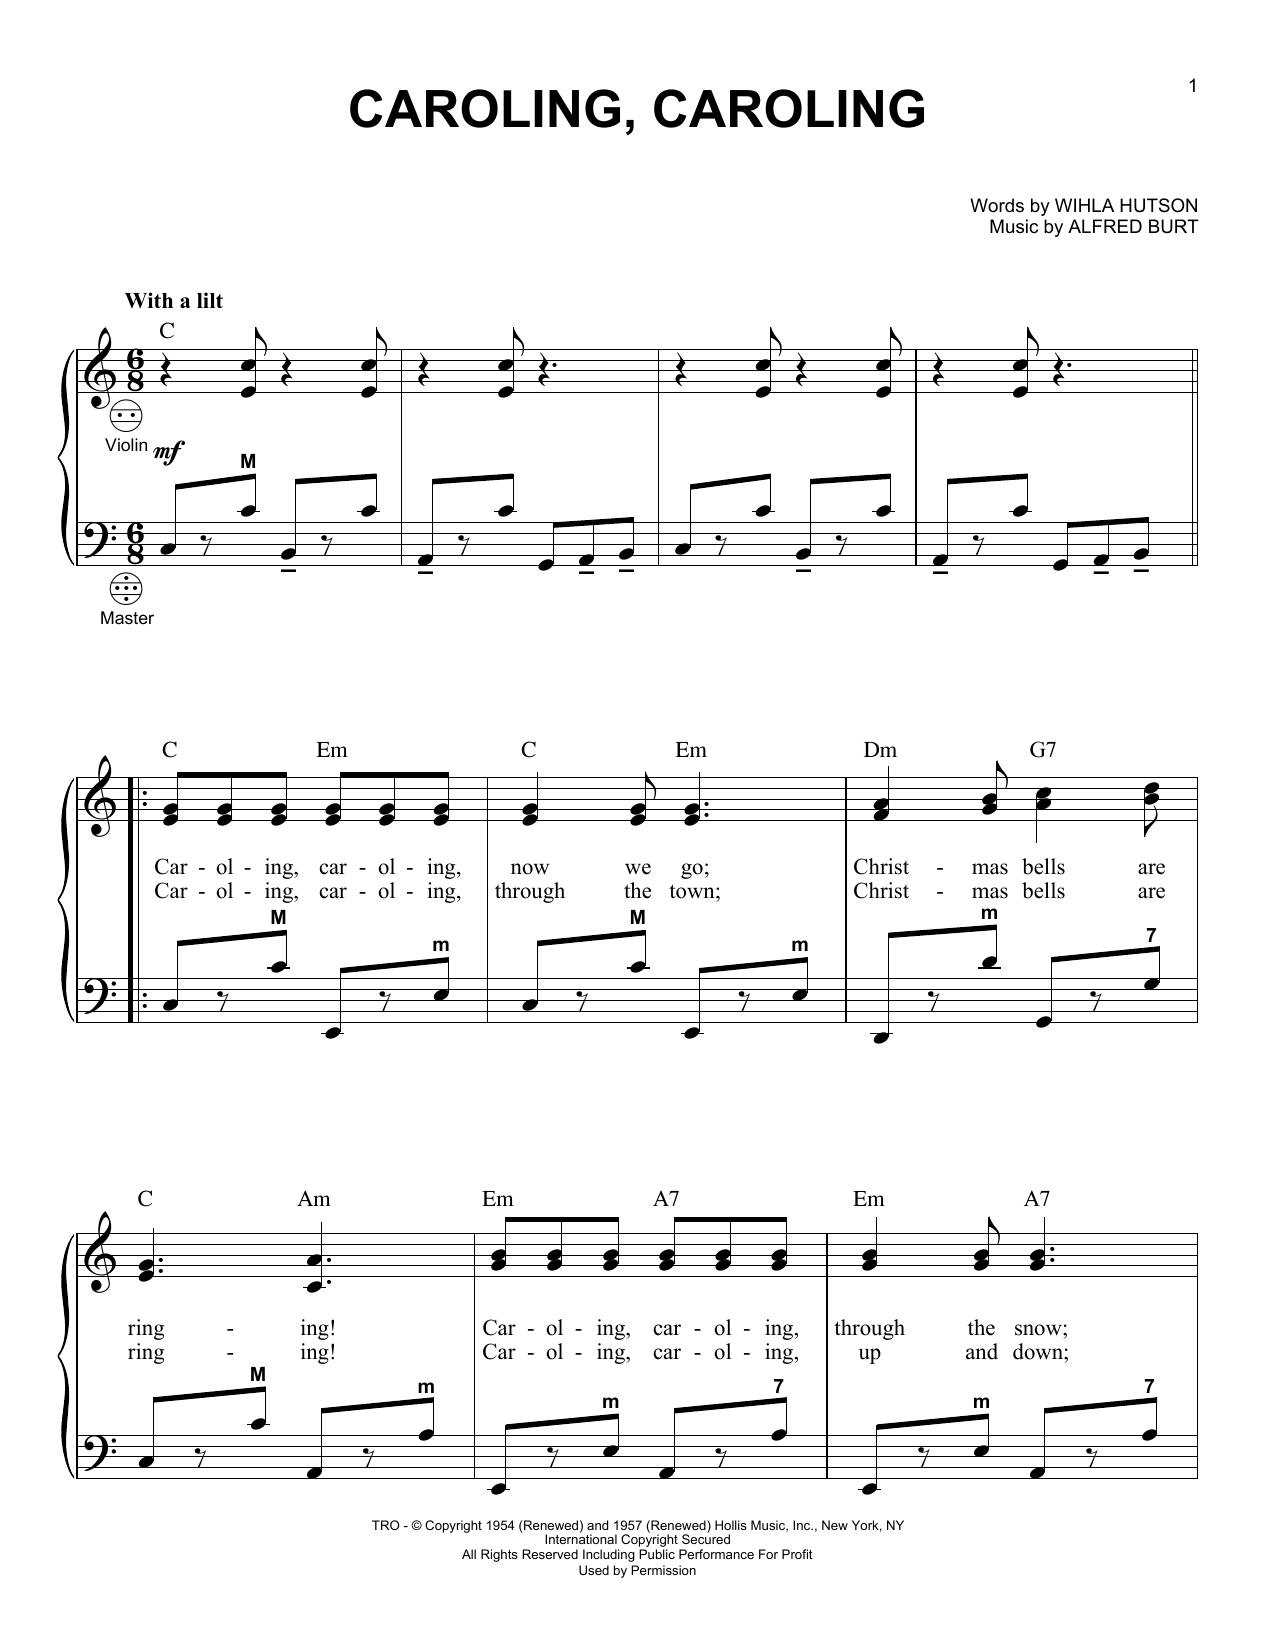 Alfred Burt Caroling, Caroling Sheet Music Notes & Chords for Cello - Download or Print PDF